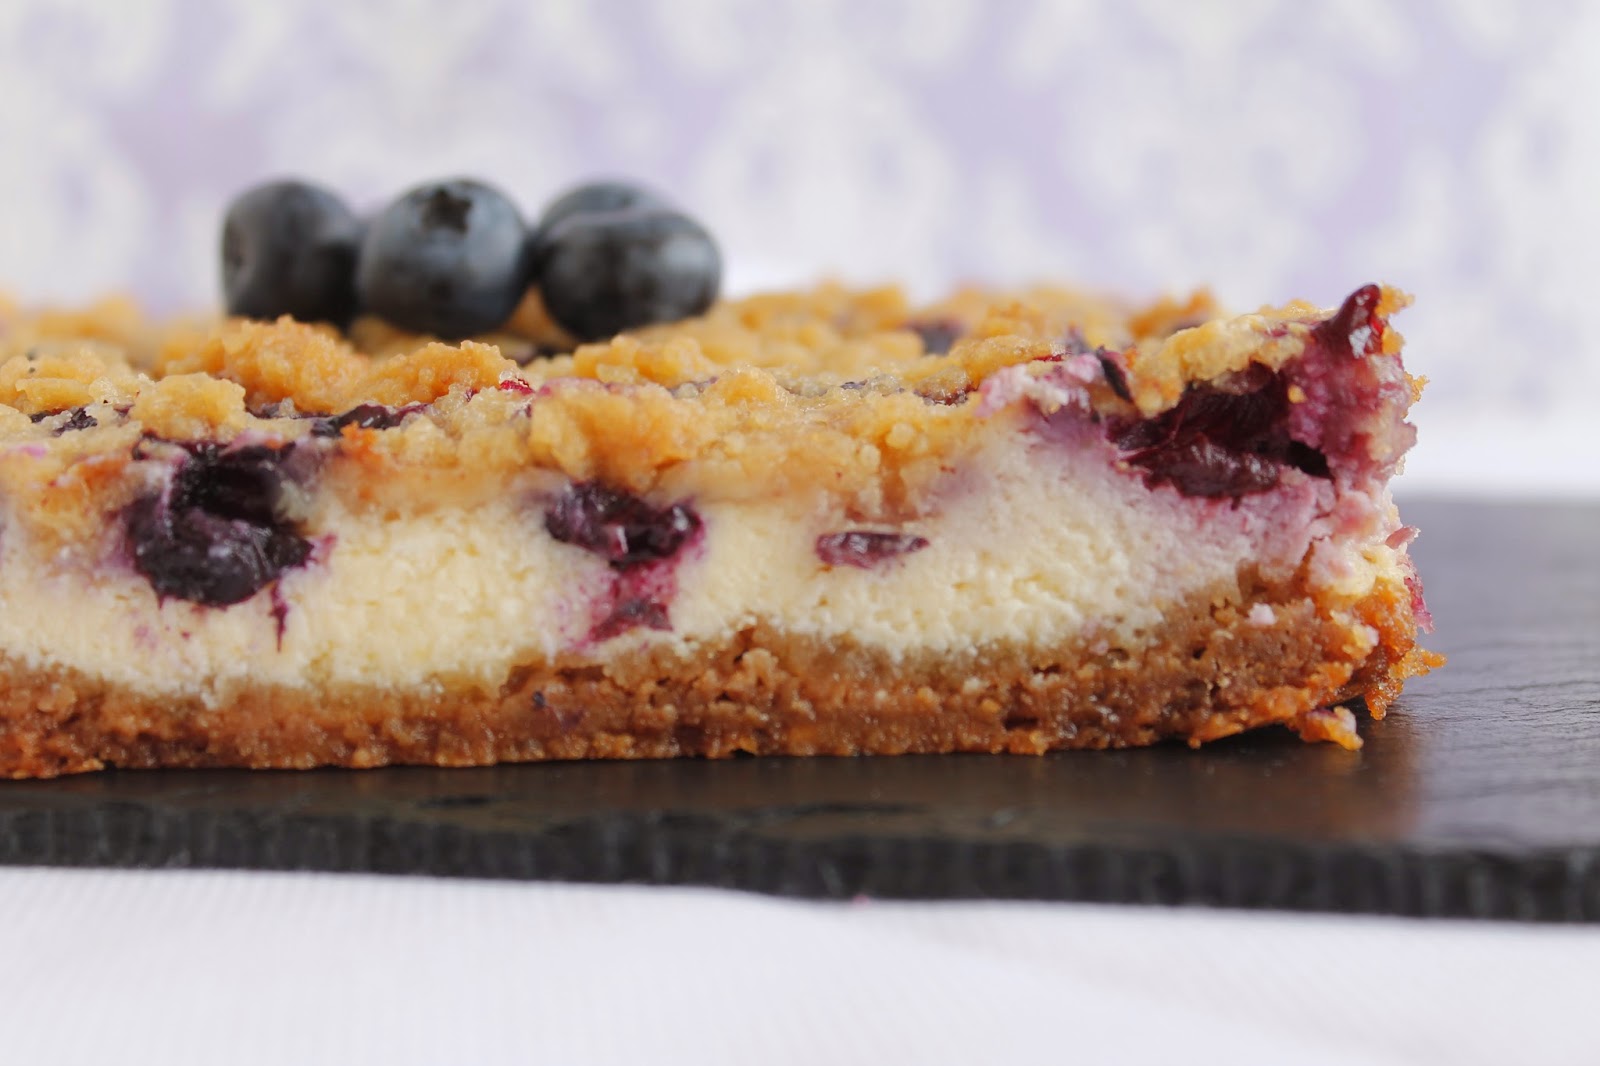 Receta Blueberry cheesecake bars o barritas de tarta de queso con arándanos